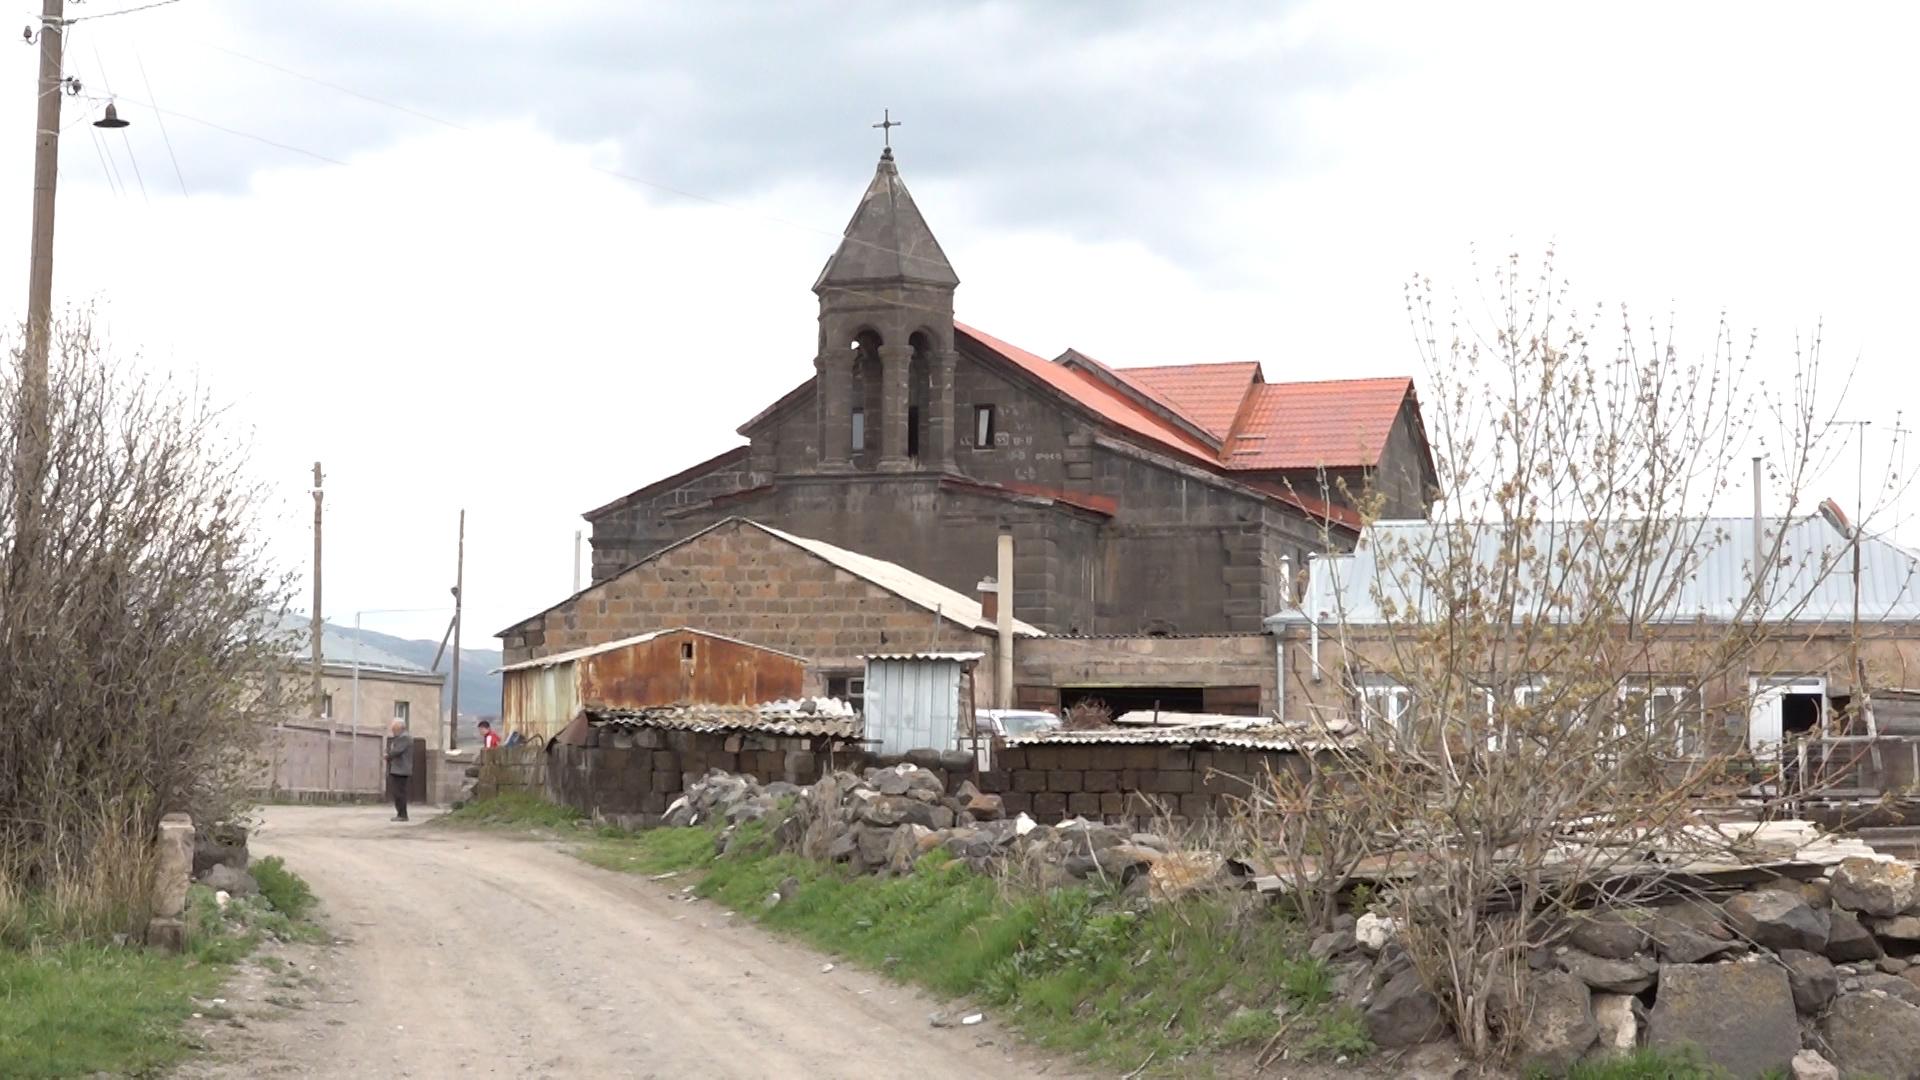 Արևիկ. հայ կաթոլիկ գյուղի մարդիկ, կյանքը, պատմությունը